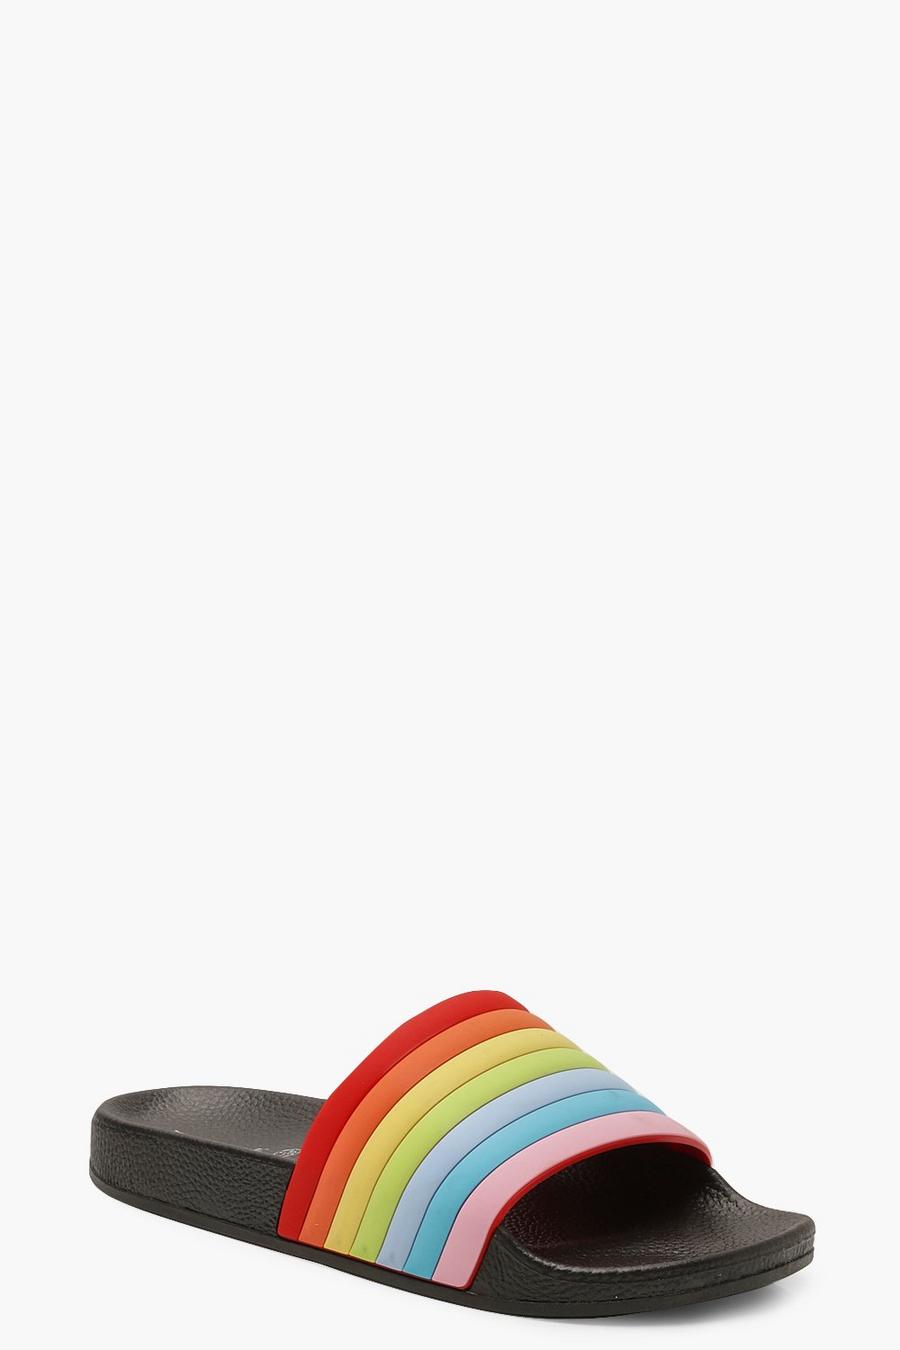 Black Rainbow Slides image number 1